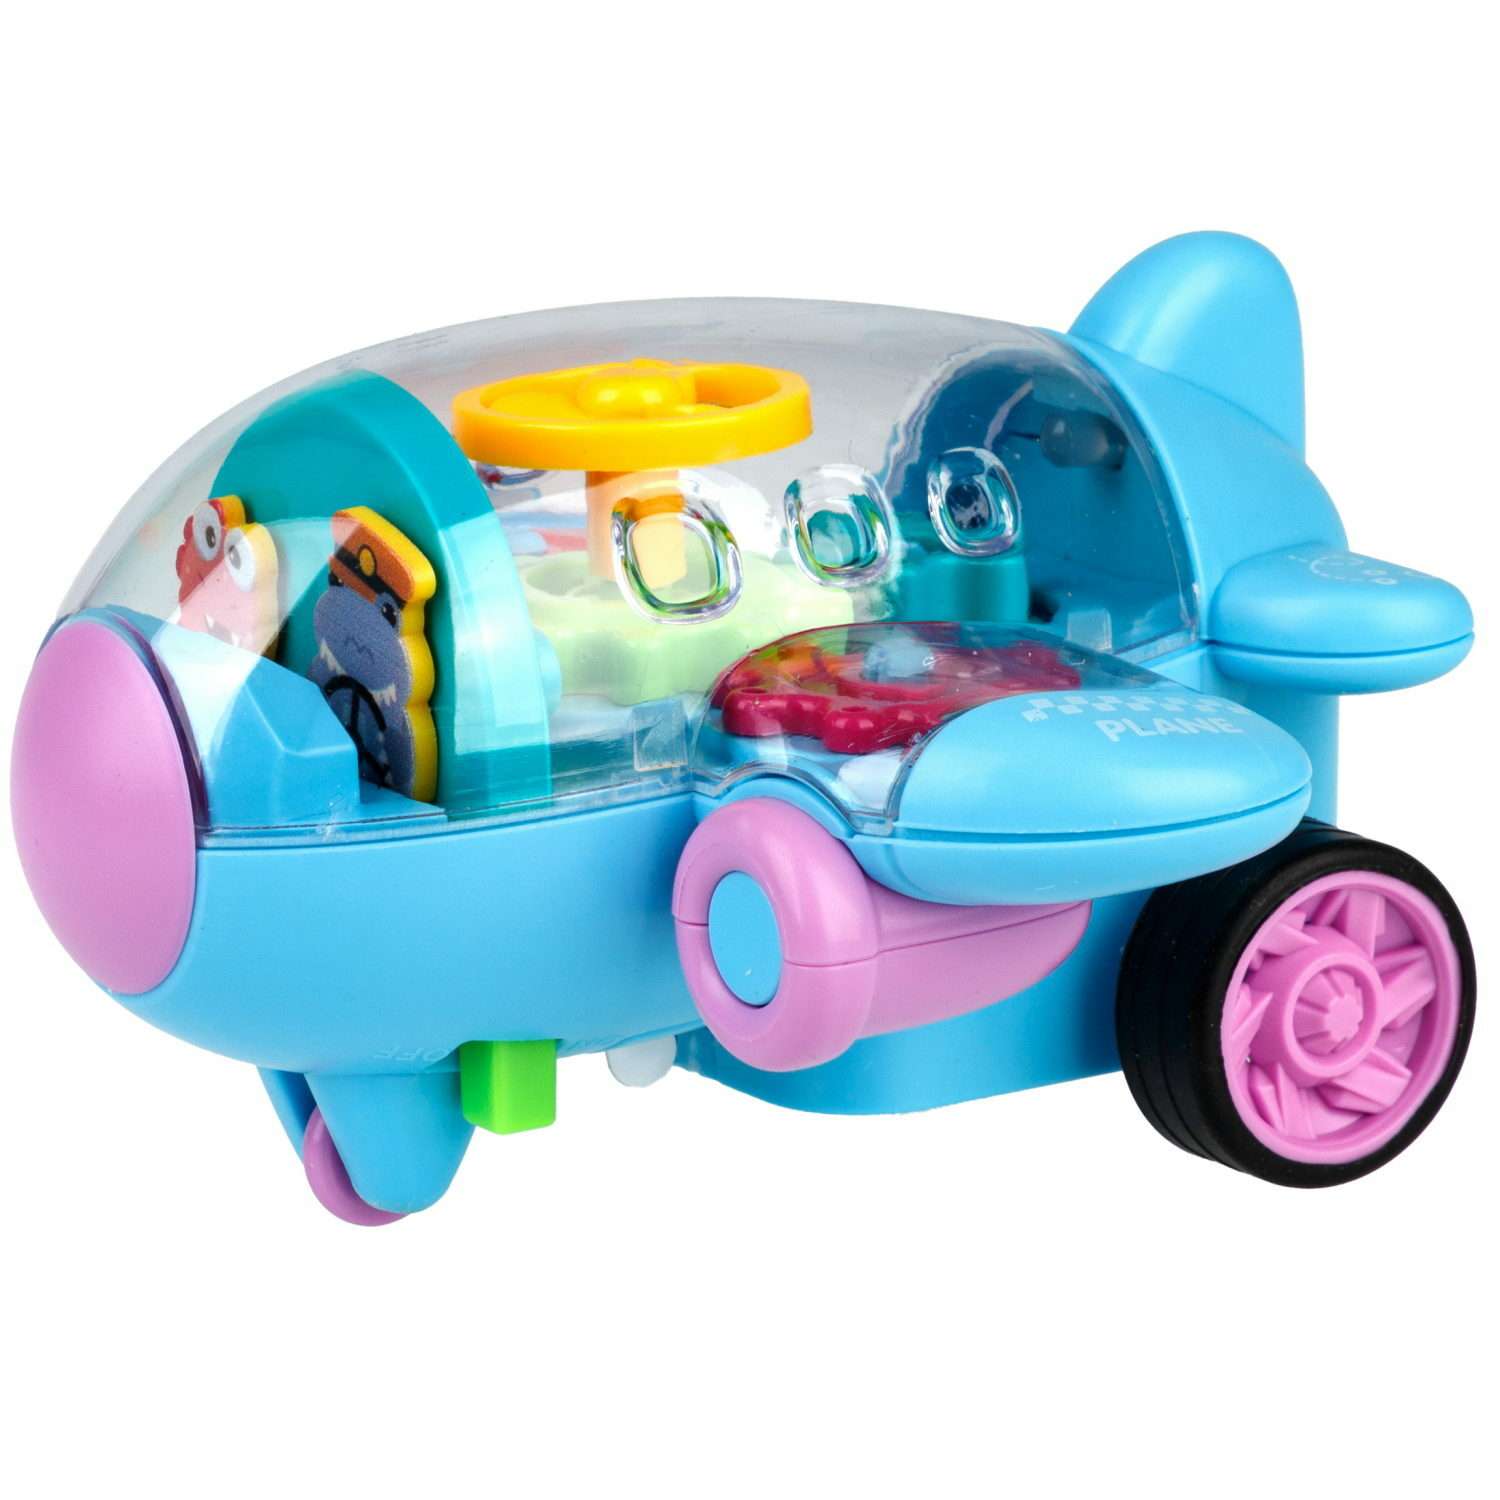 Самолет игрушка для детей 1TOY Движок голубой прозрачный с шестеренками светящийся на батарейках - фото 1